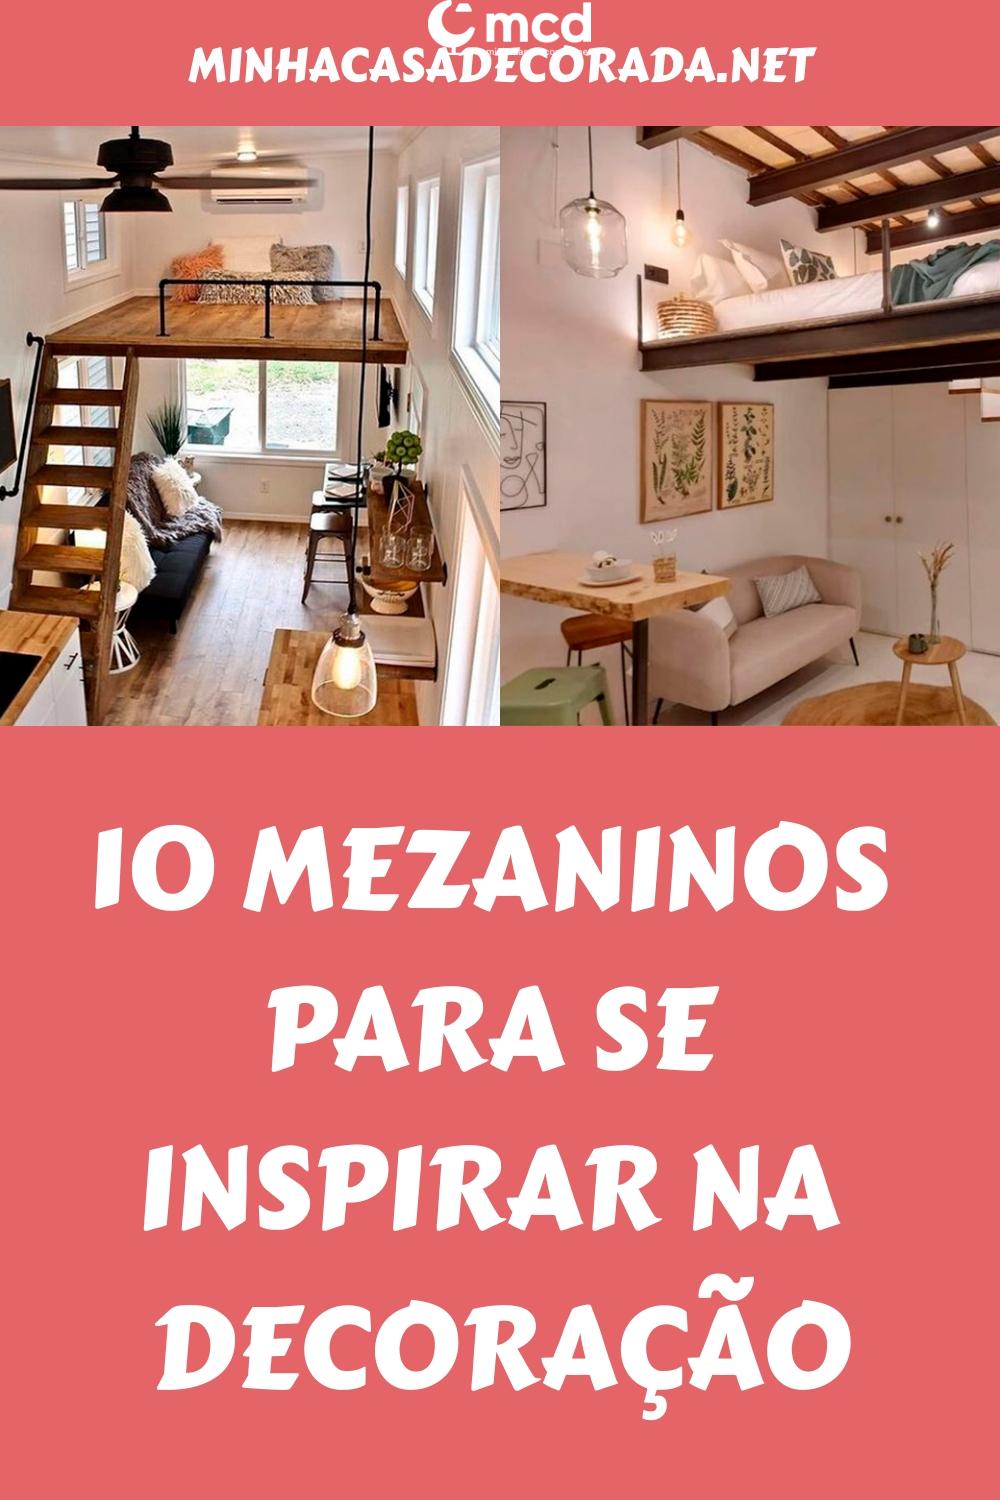 10 mezaninos para se inspirar na decoração